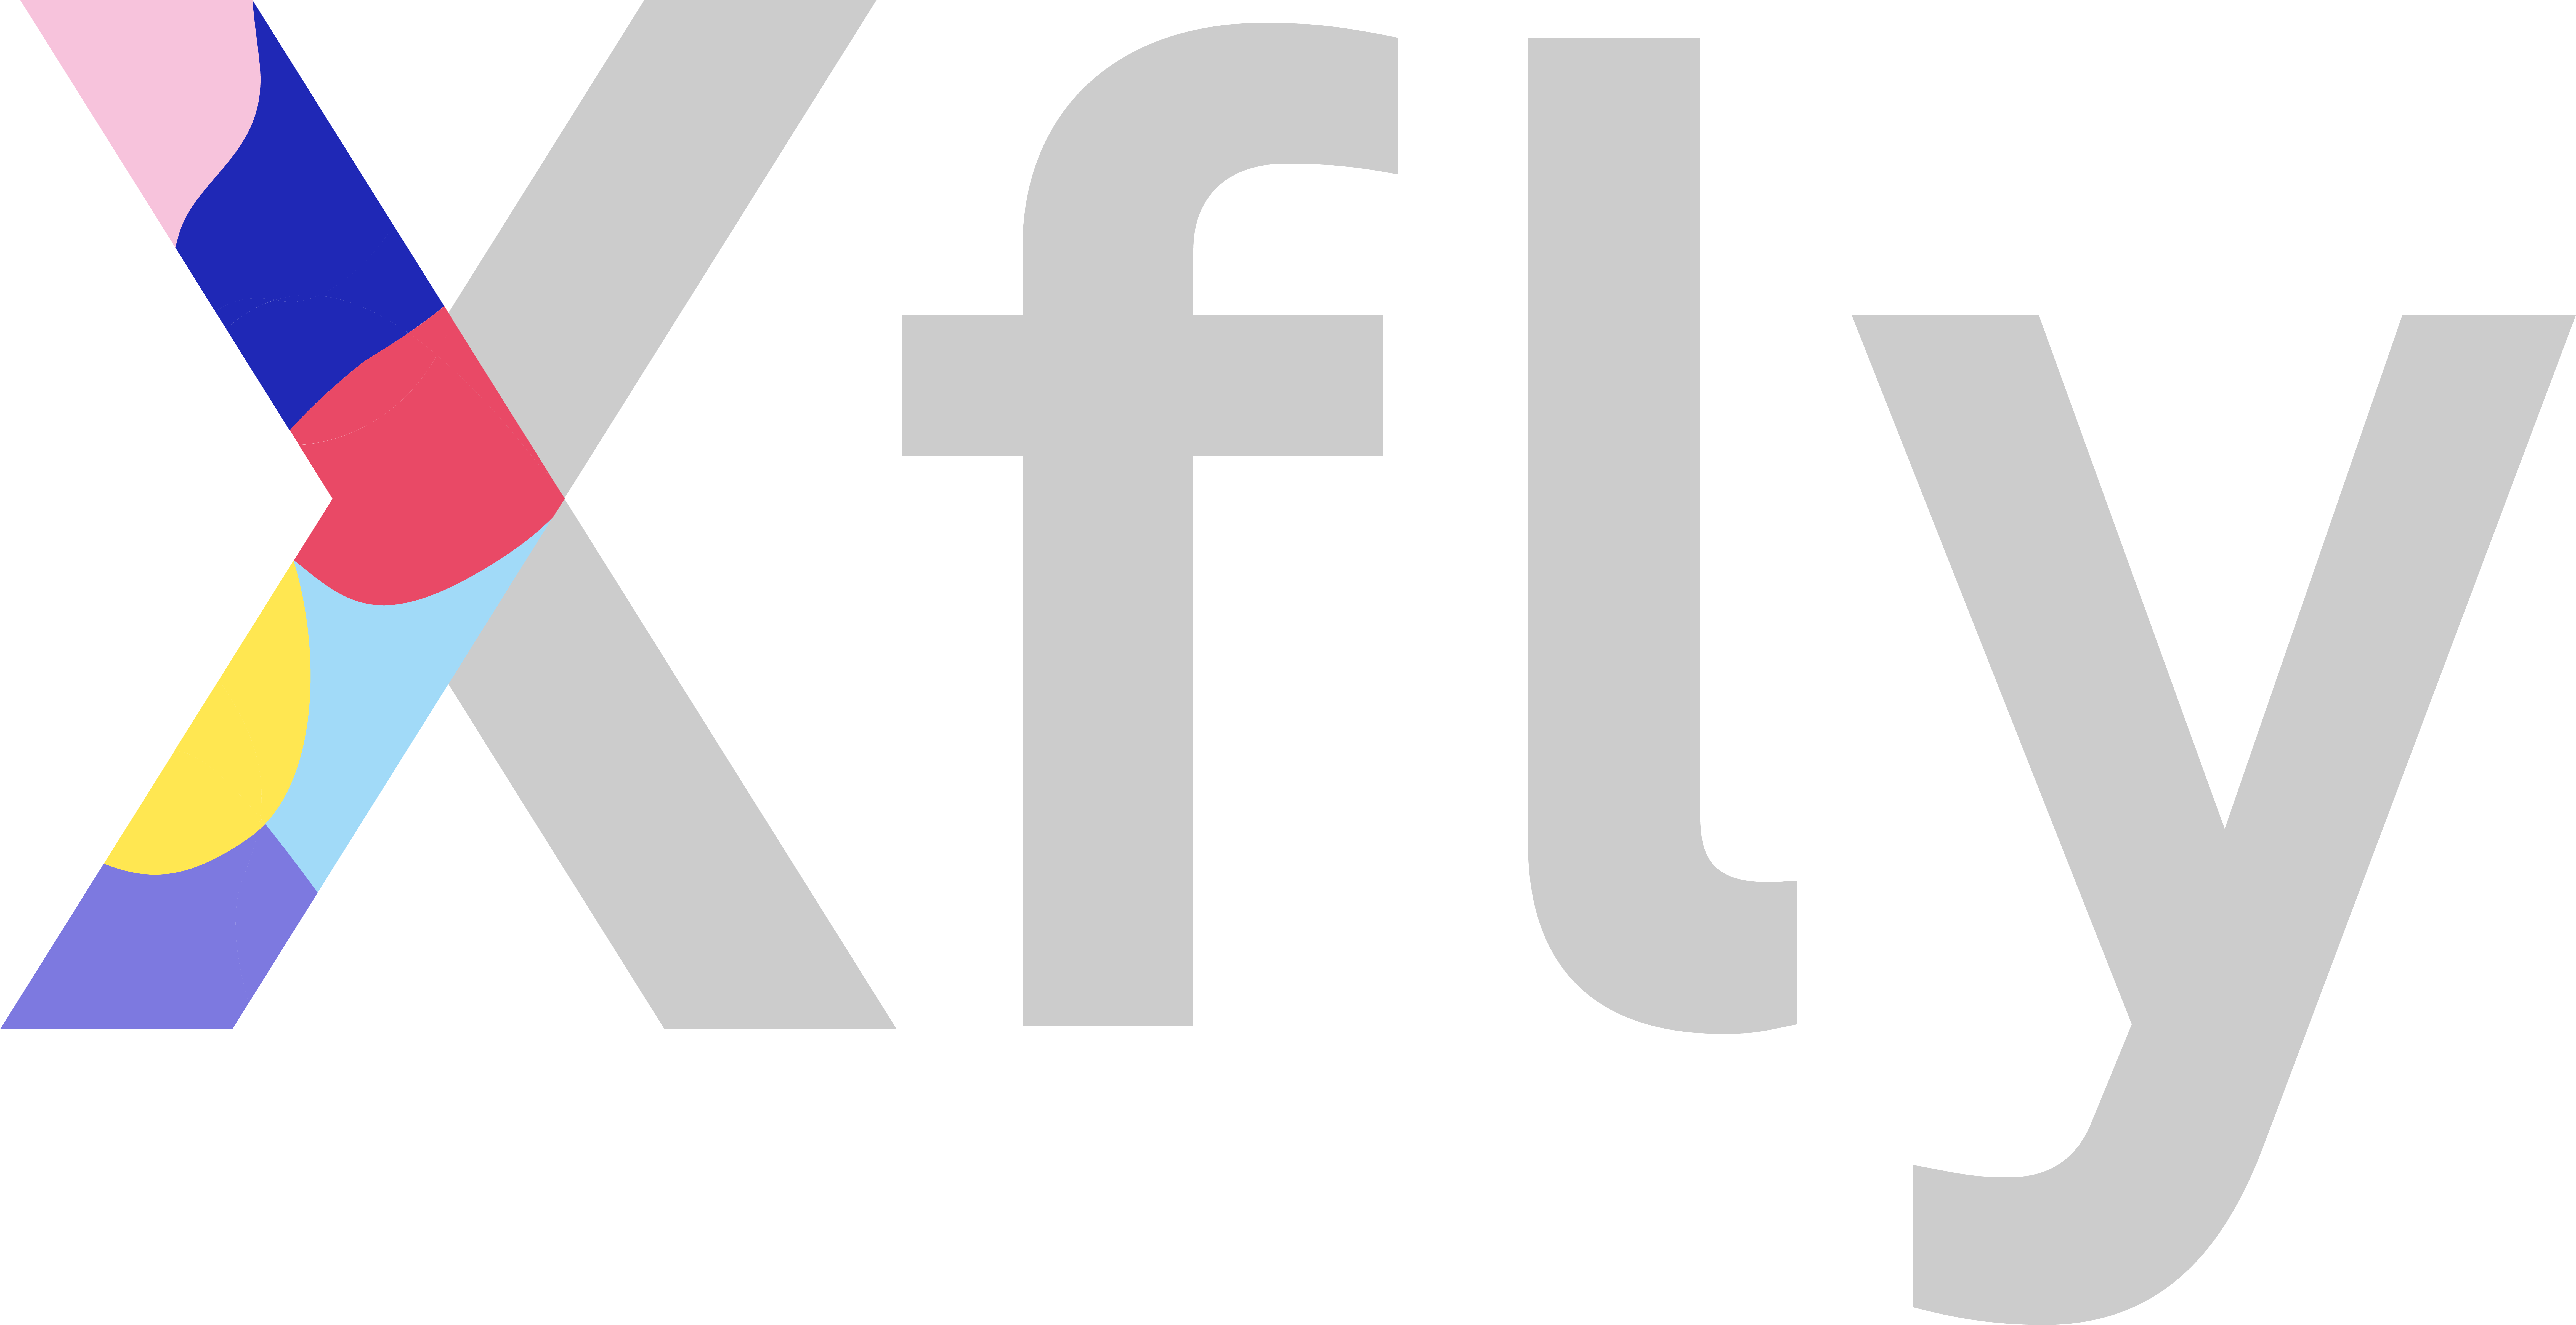 Xfly